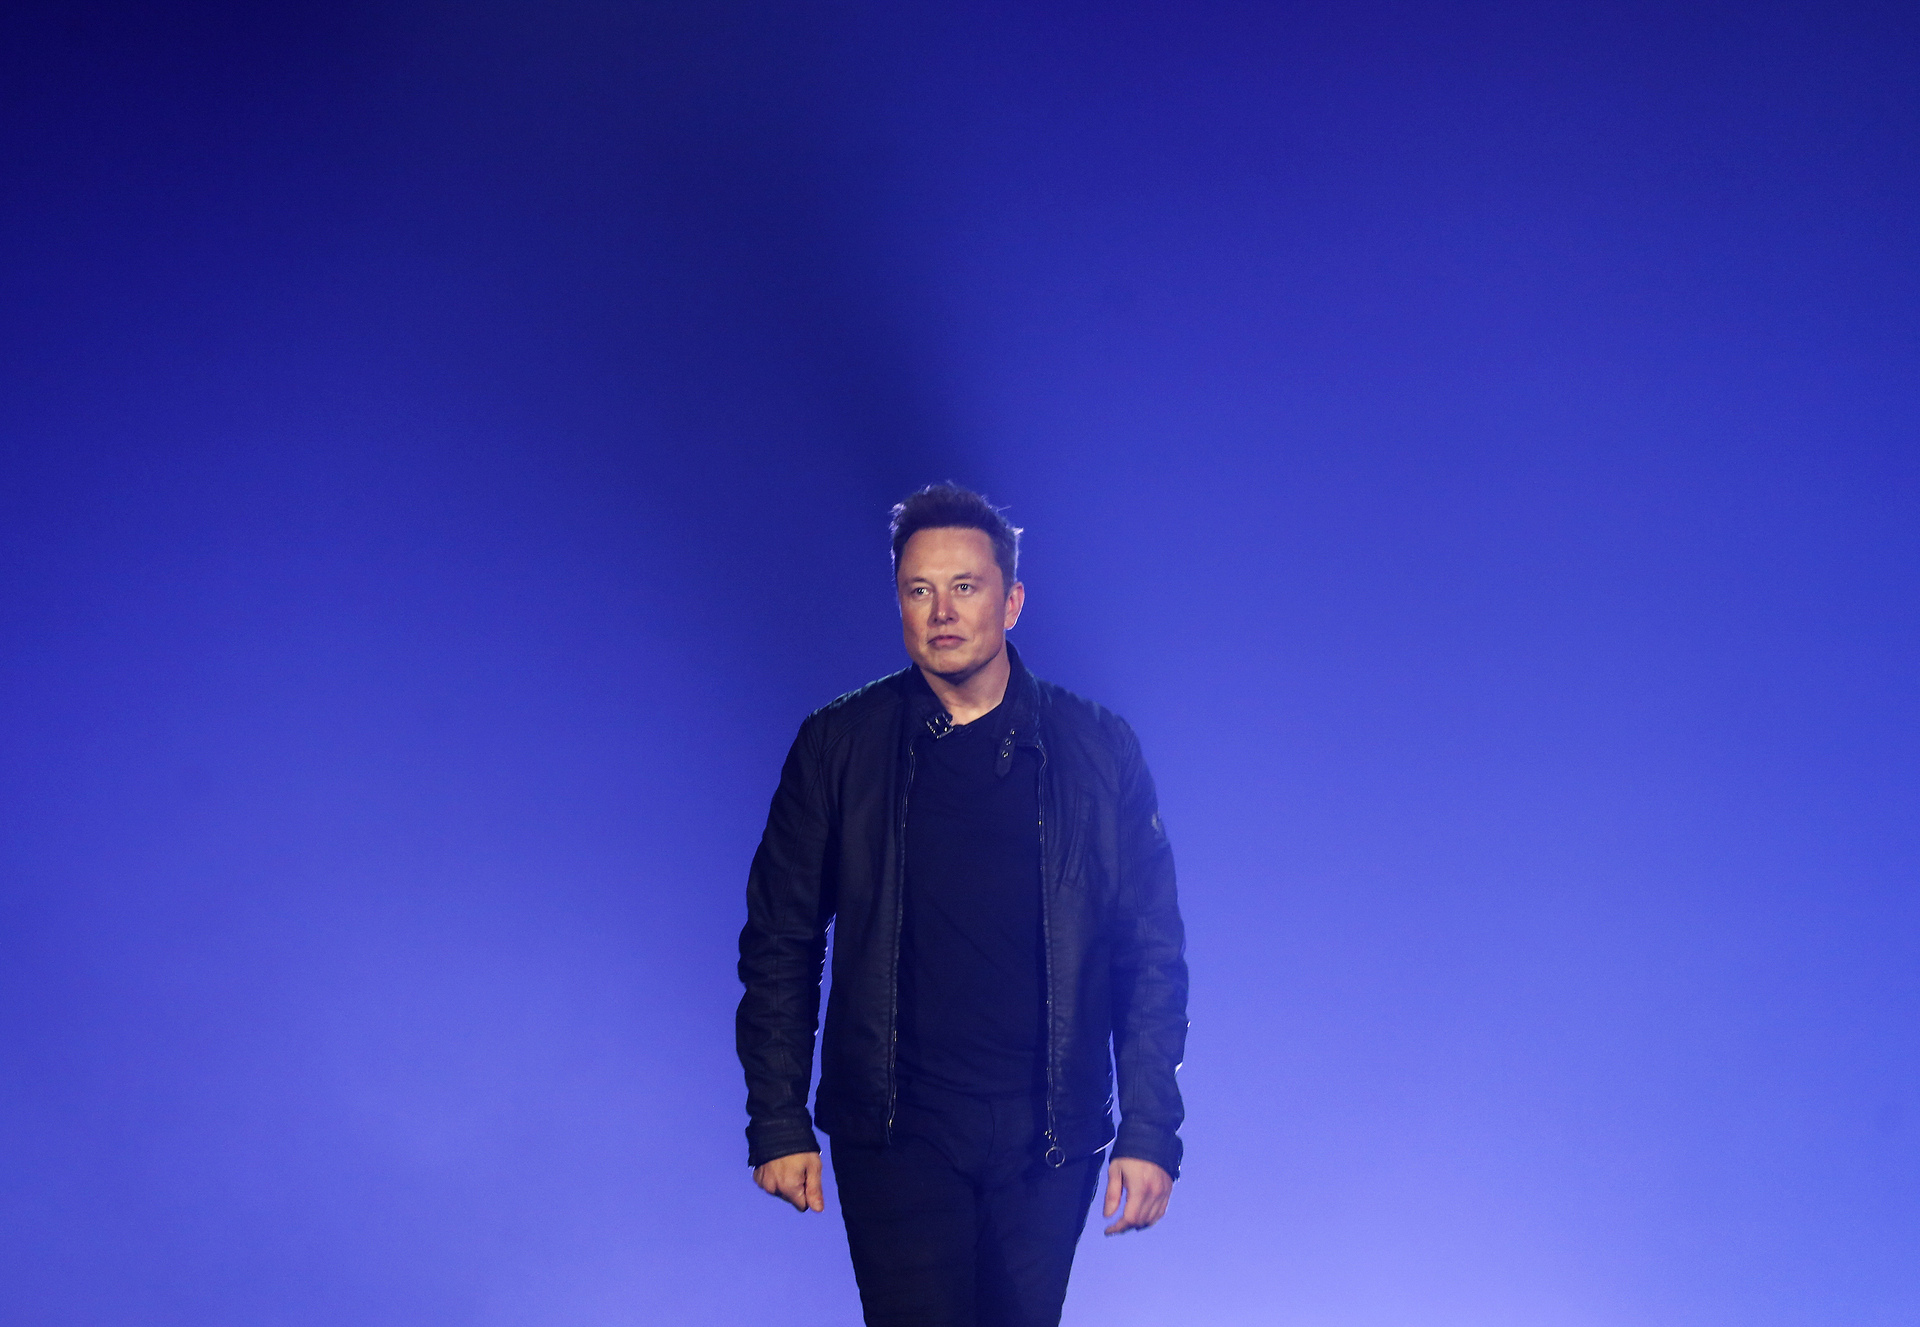 Cuentas bloqueadas de Twitter no regresarán por el momento: Elon Musk